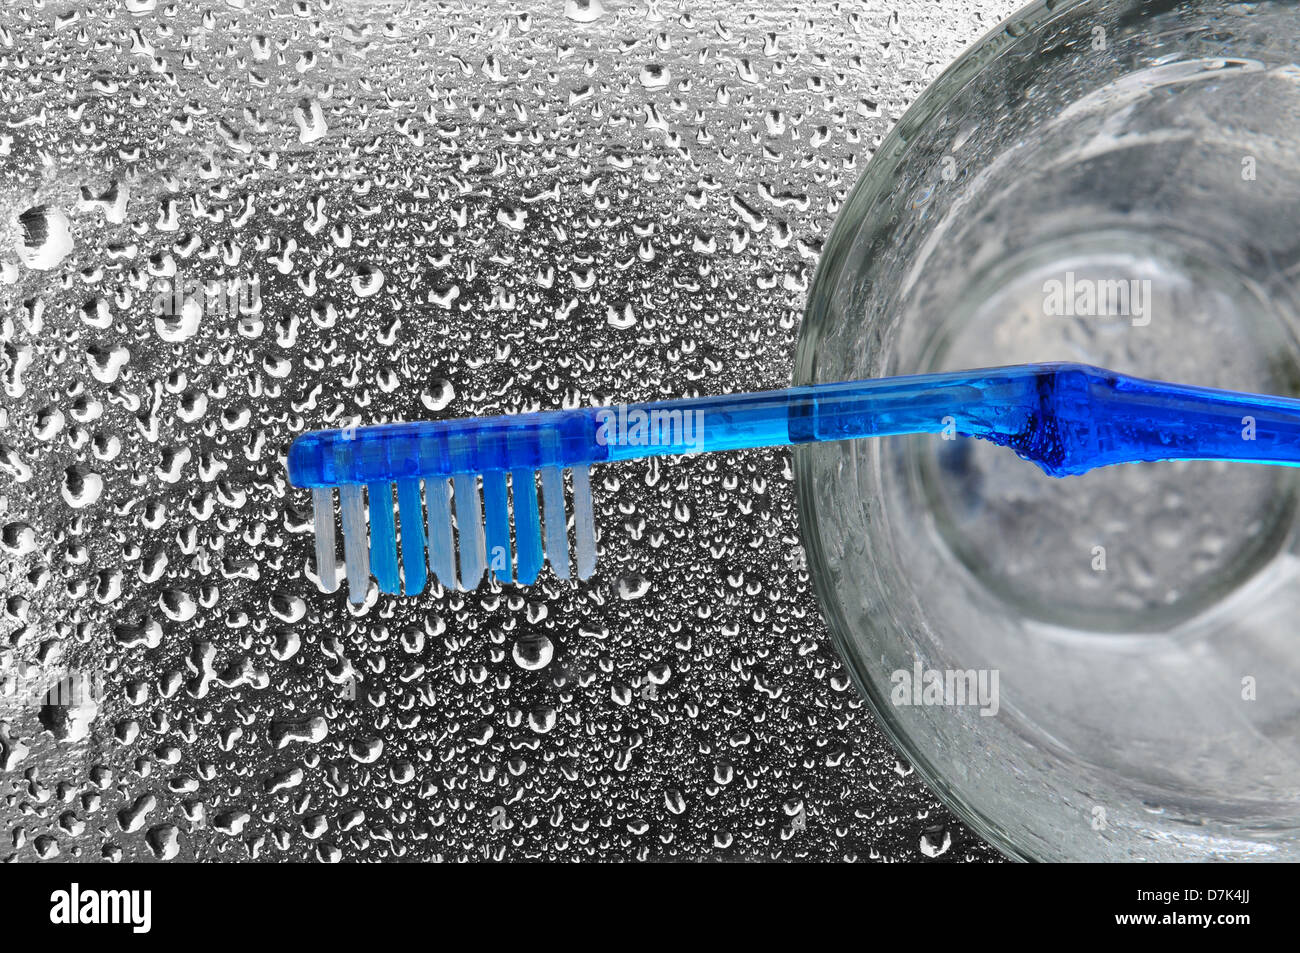 Eine blaue Zahnbürste auf einem Glas sitzt auf einem nassen Bad Zähler nach oben. Stockfoto